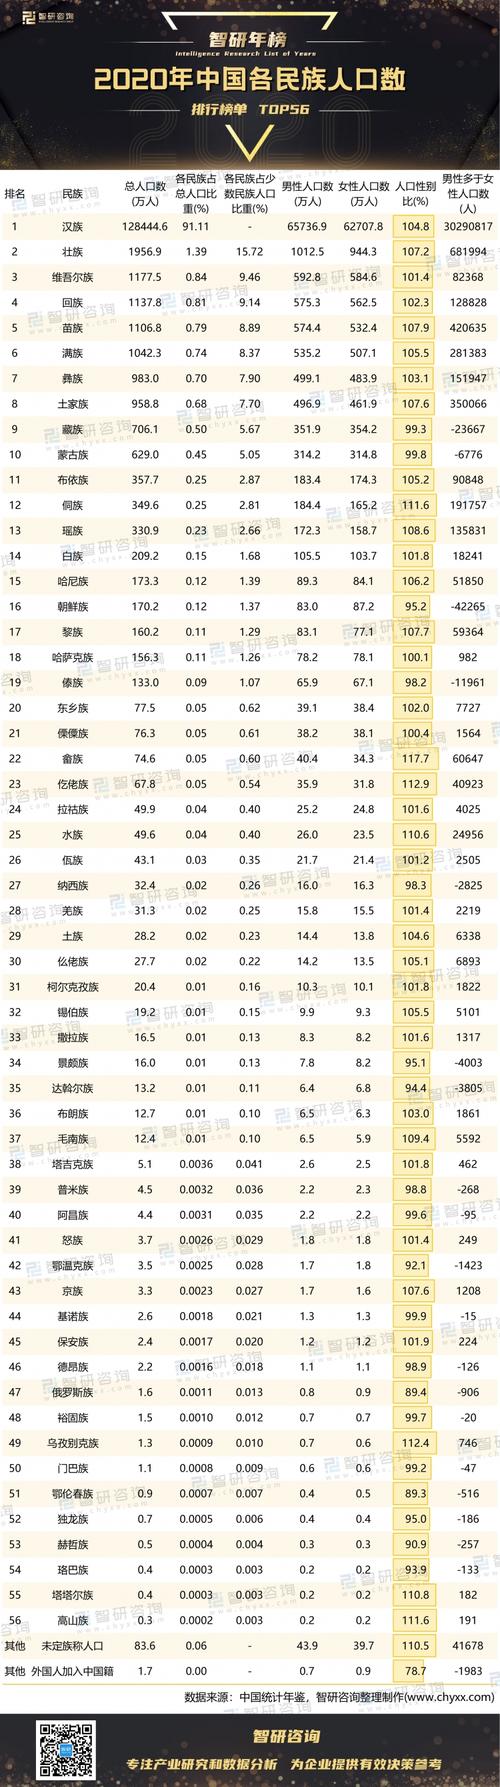 2020年中国各民族人口数排行榜:7个民族人口性别比大于110,3个民族